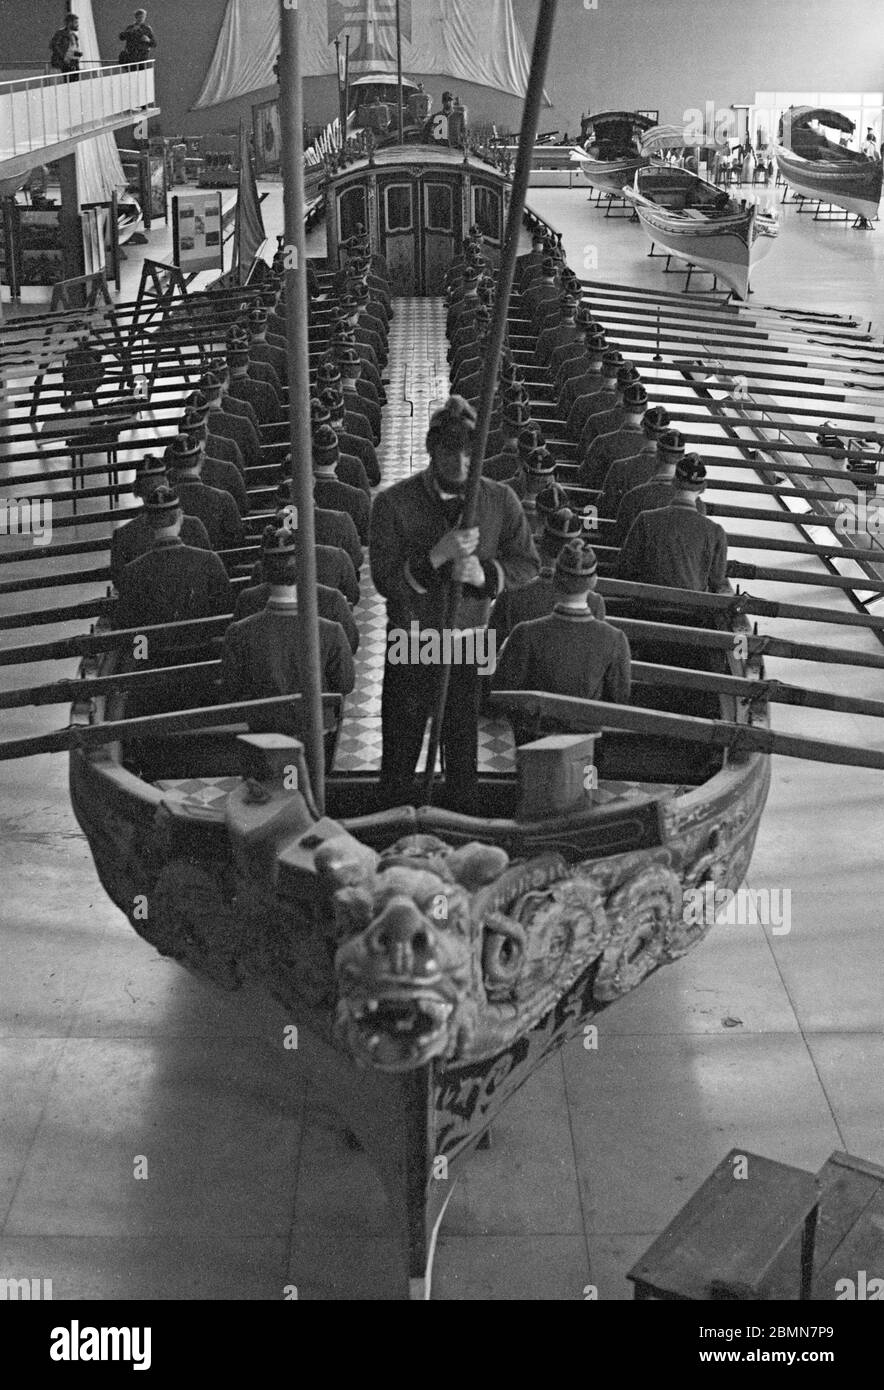 Barge royale, Musée de la Marine, 05 février 1982, Lisbonne, Portugal Banque D'Images